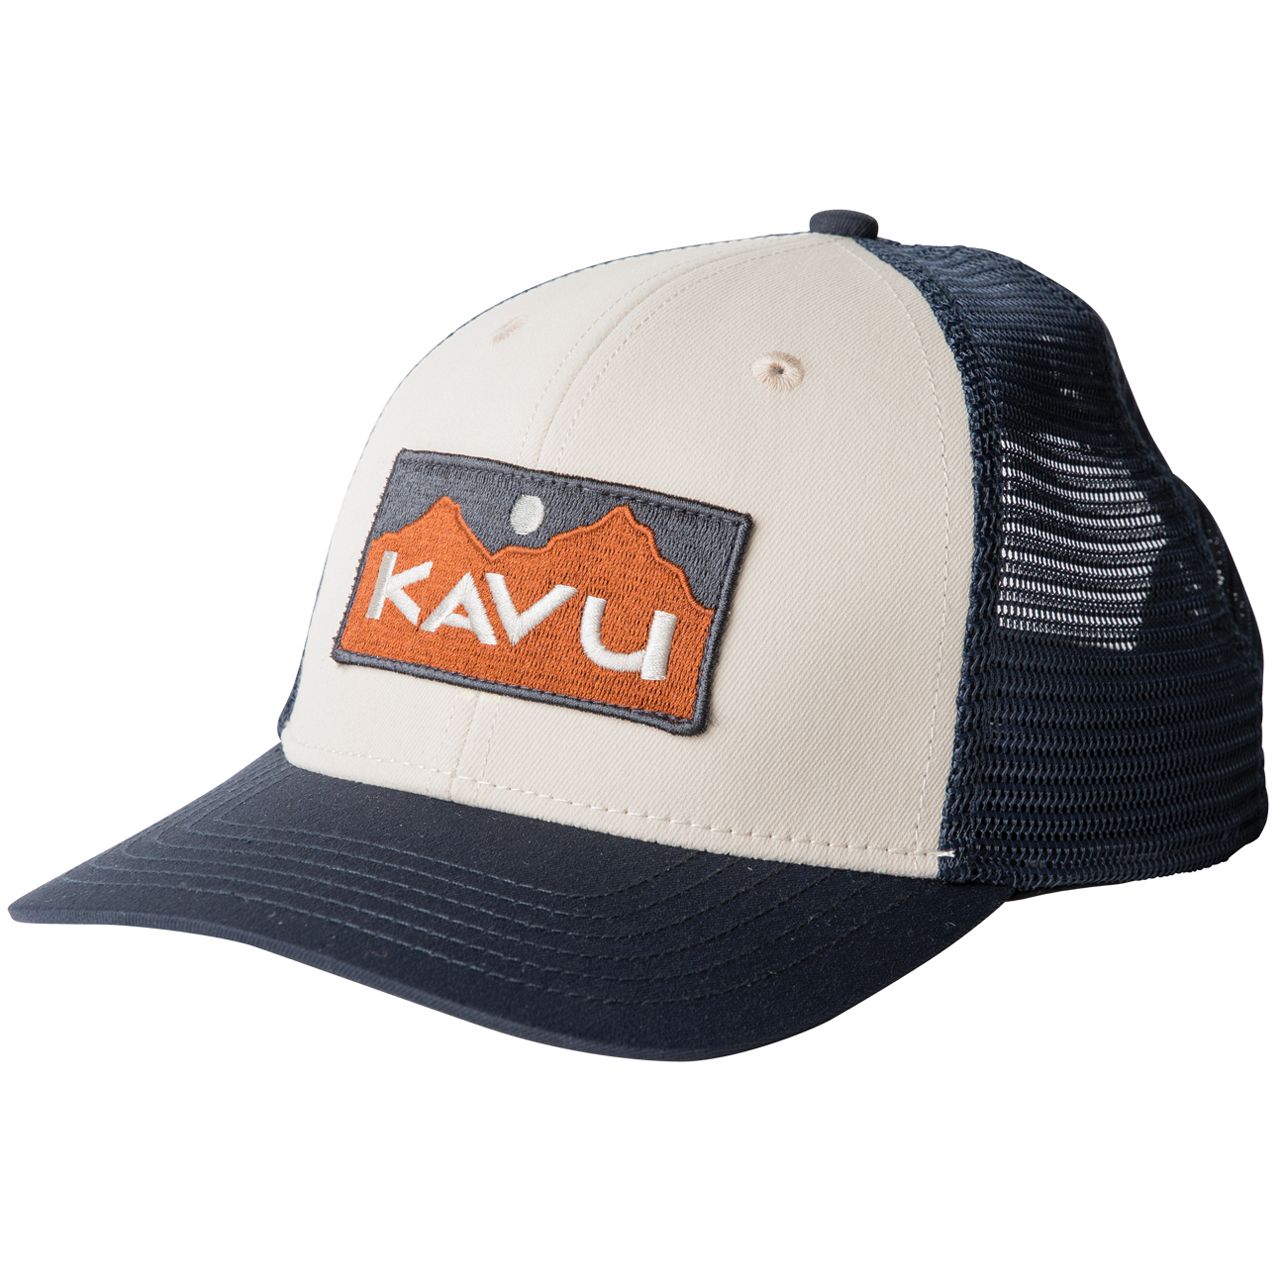 Produktbild von KAVU Above Standard Trucker Cap - River Wild